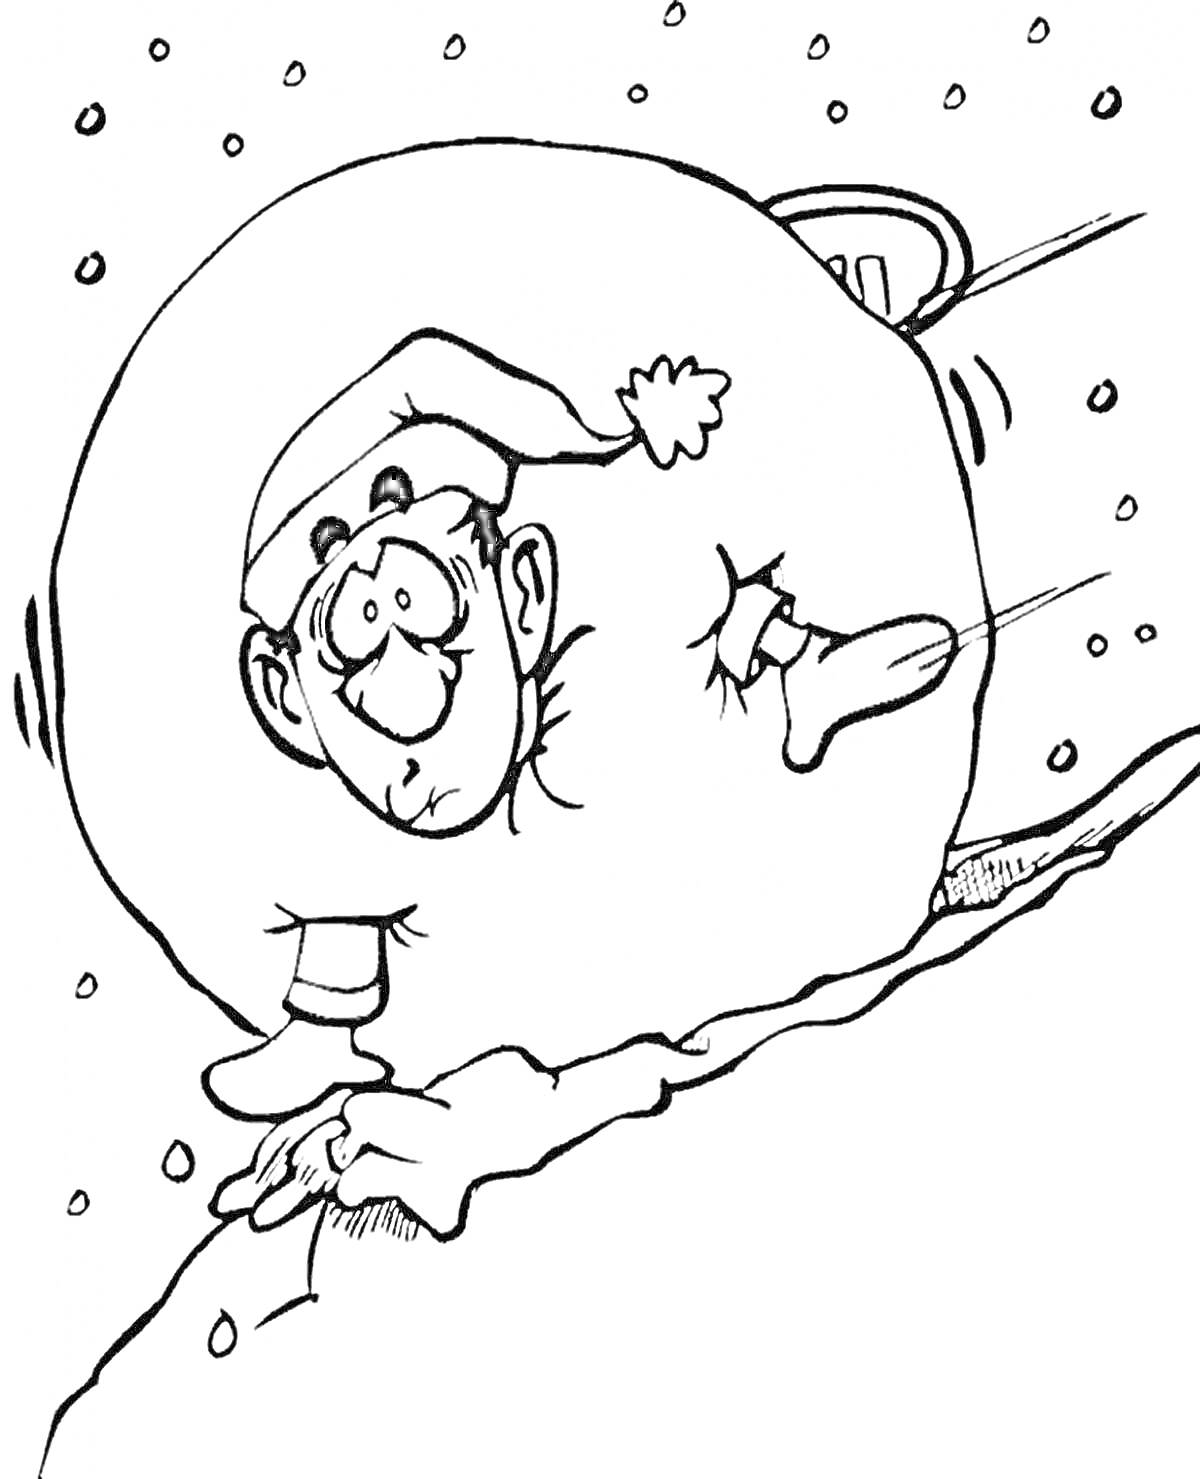 Раскраска Человек в шапке Санта-Клауса внутри большого снежного кома, катающийся по склону